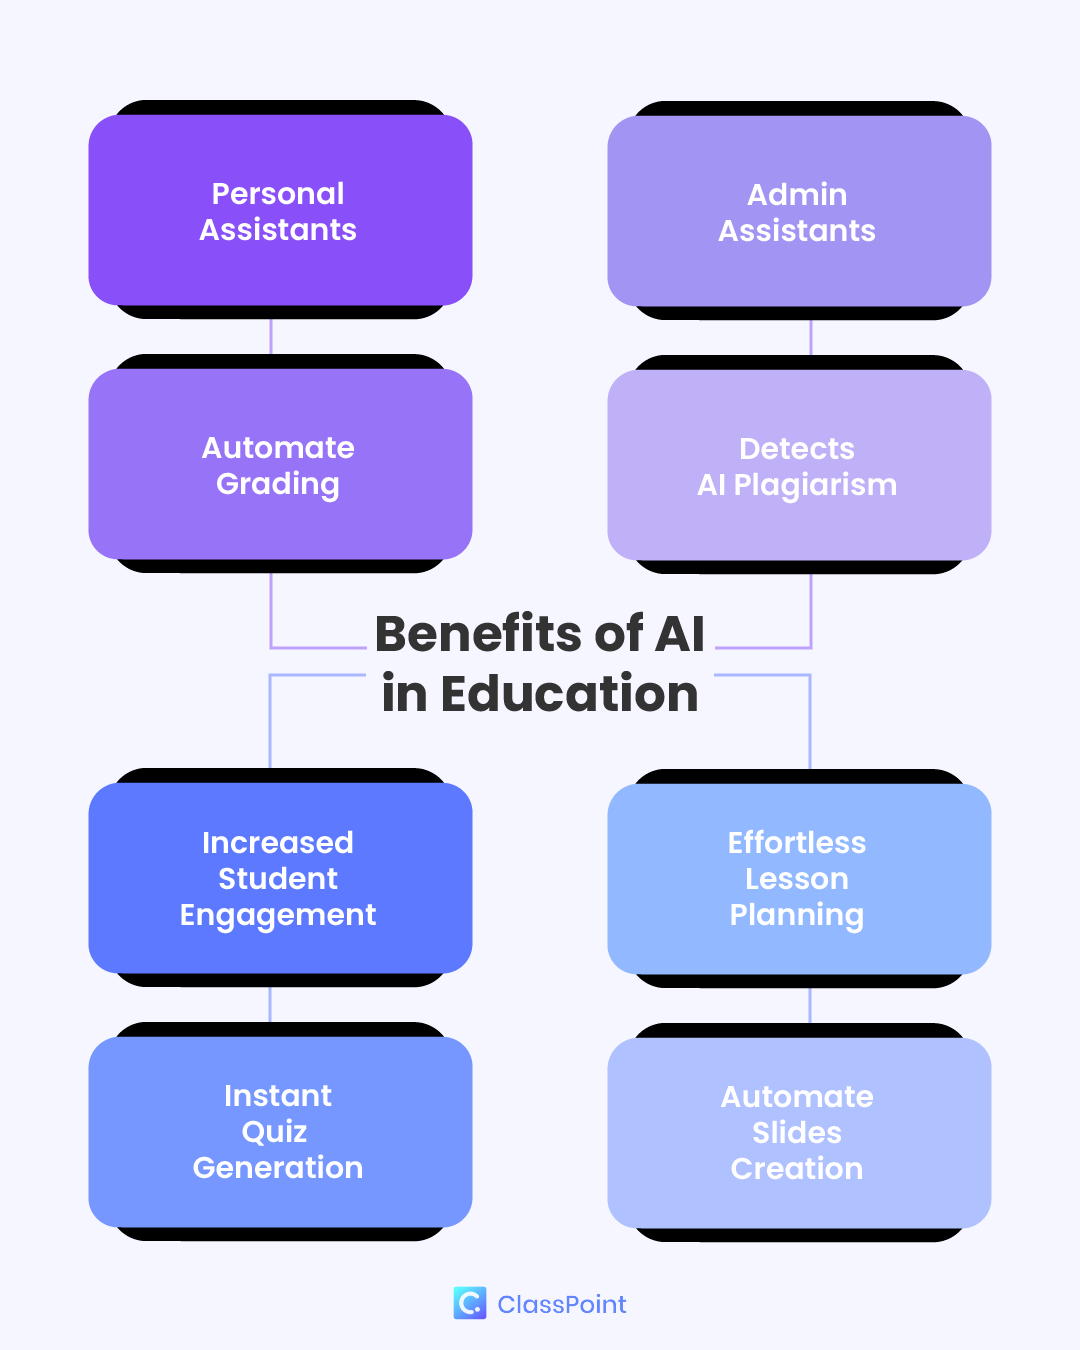 Les avantages de l'IA dans l'éducation